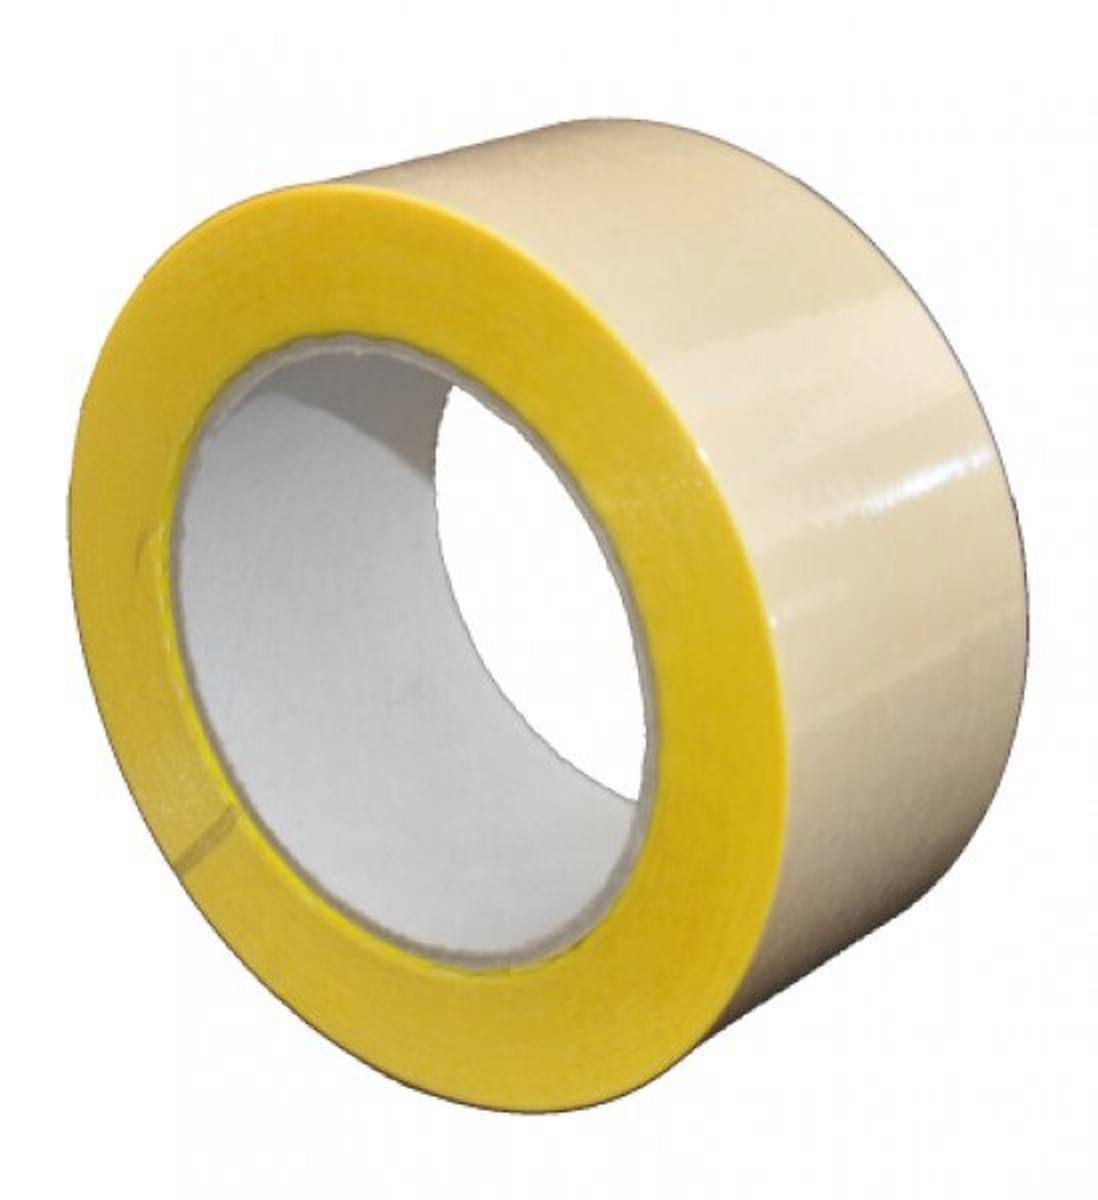 S-K-S 407 Cinta adhesiva de doble cara con soporte de polipropileno, alta / baja adhesividad, amarilla, 400 mm x 50 m, 0,15 mm